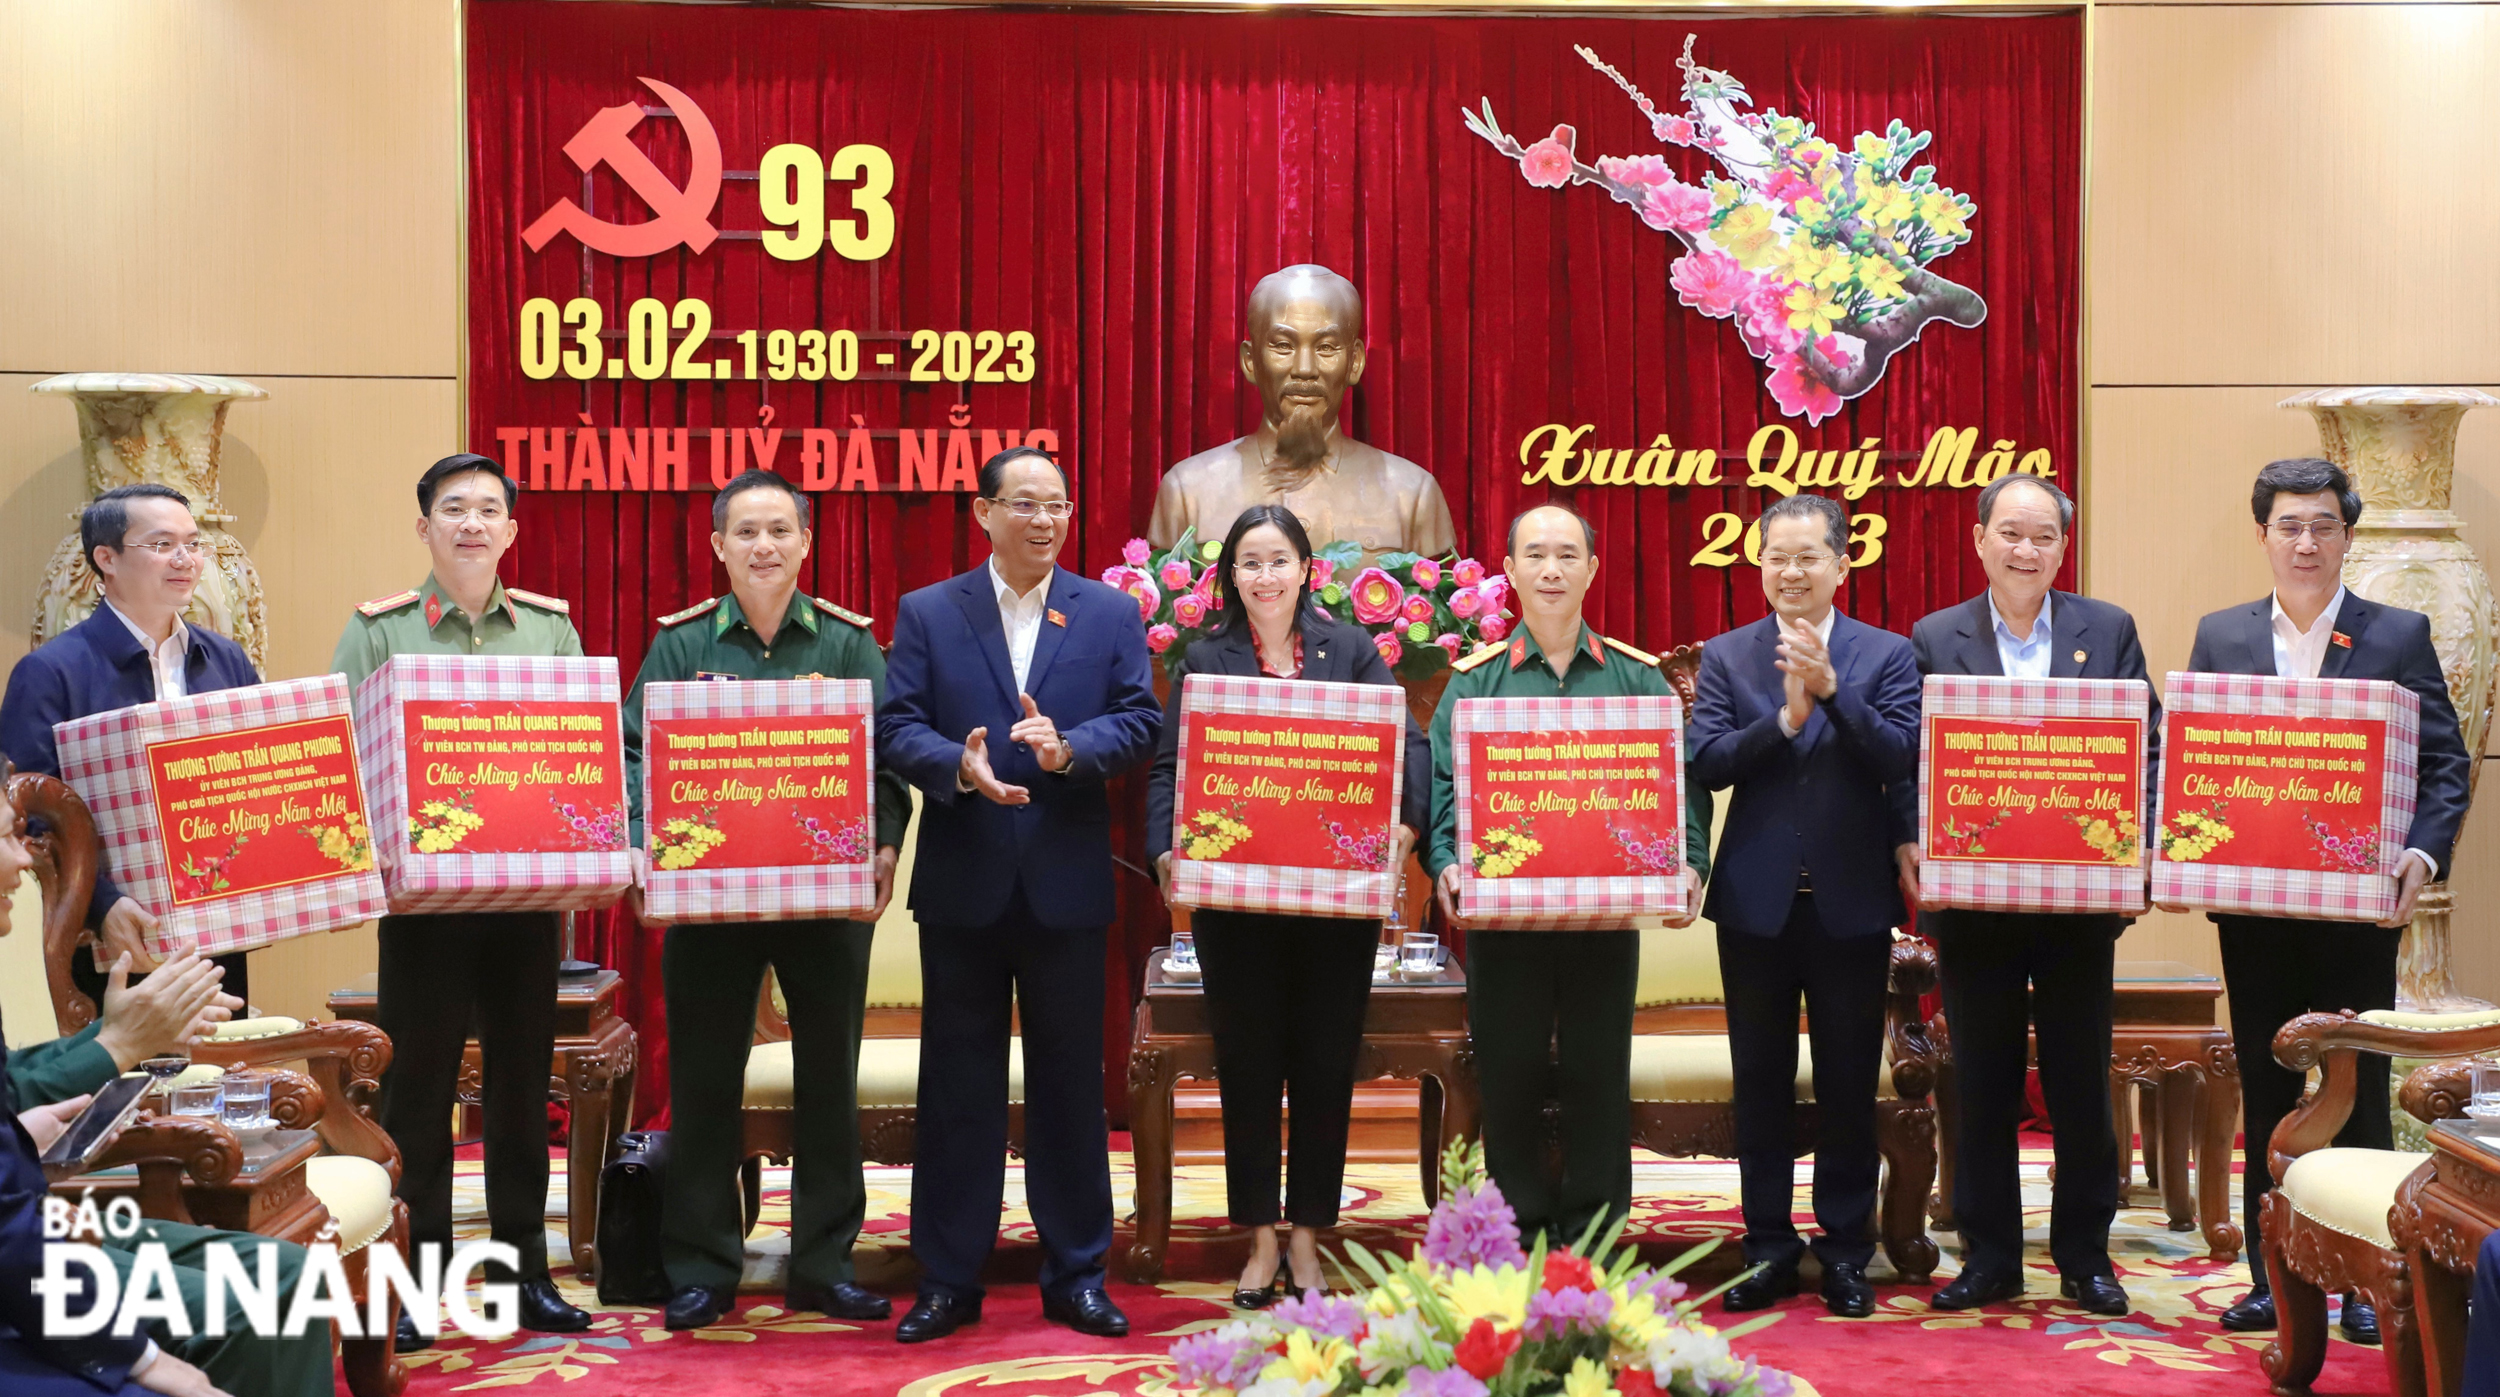 Phó Chủ tịch Quốc hội Trần Quang Phương (thứ 4, từ trái sang) và Bí thư Thành ủy Nguyễn Văn Quảng (thứ 3, từ phải sang) tặng quà chúc Tết các cơ quan, đơn vị thành phố Đà Nẵng. Ảnh: NGỌC PHÚ